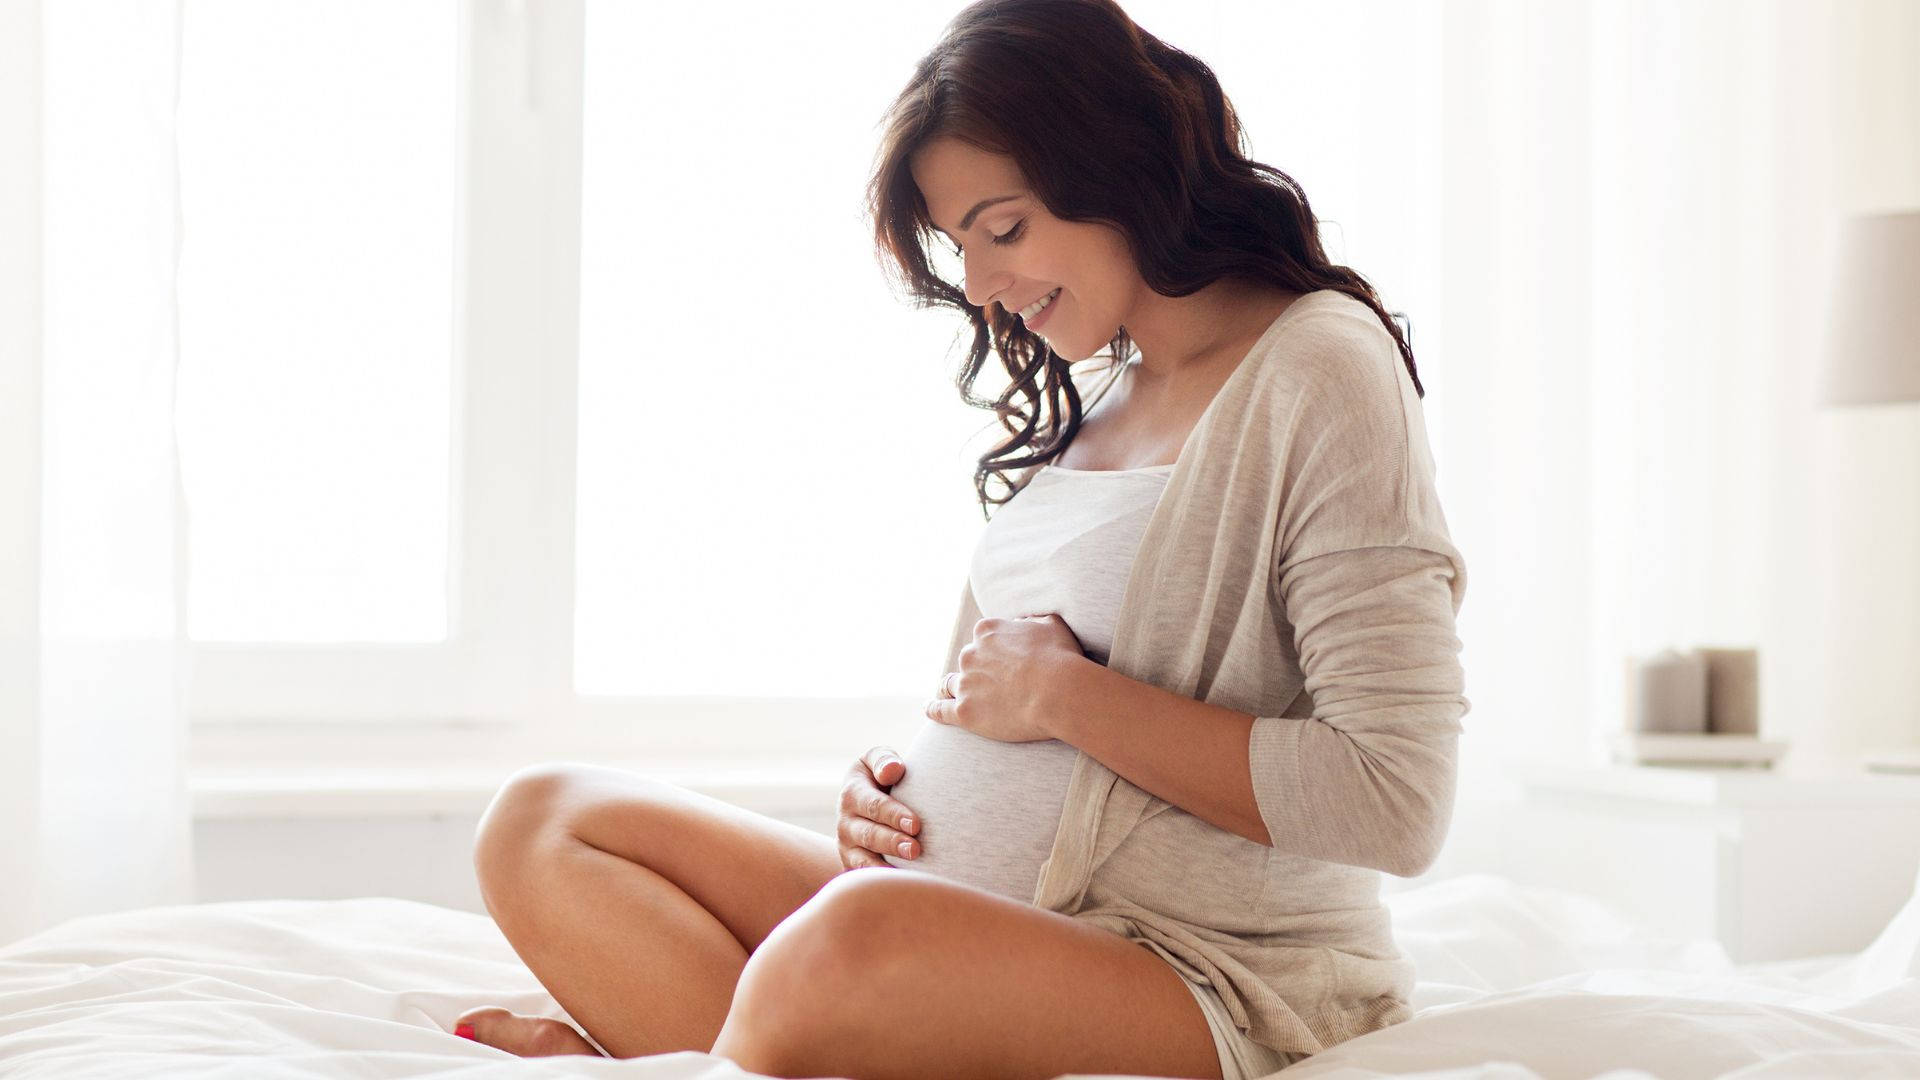 Pregnancy Smiling Woman Wallpaper